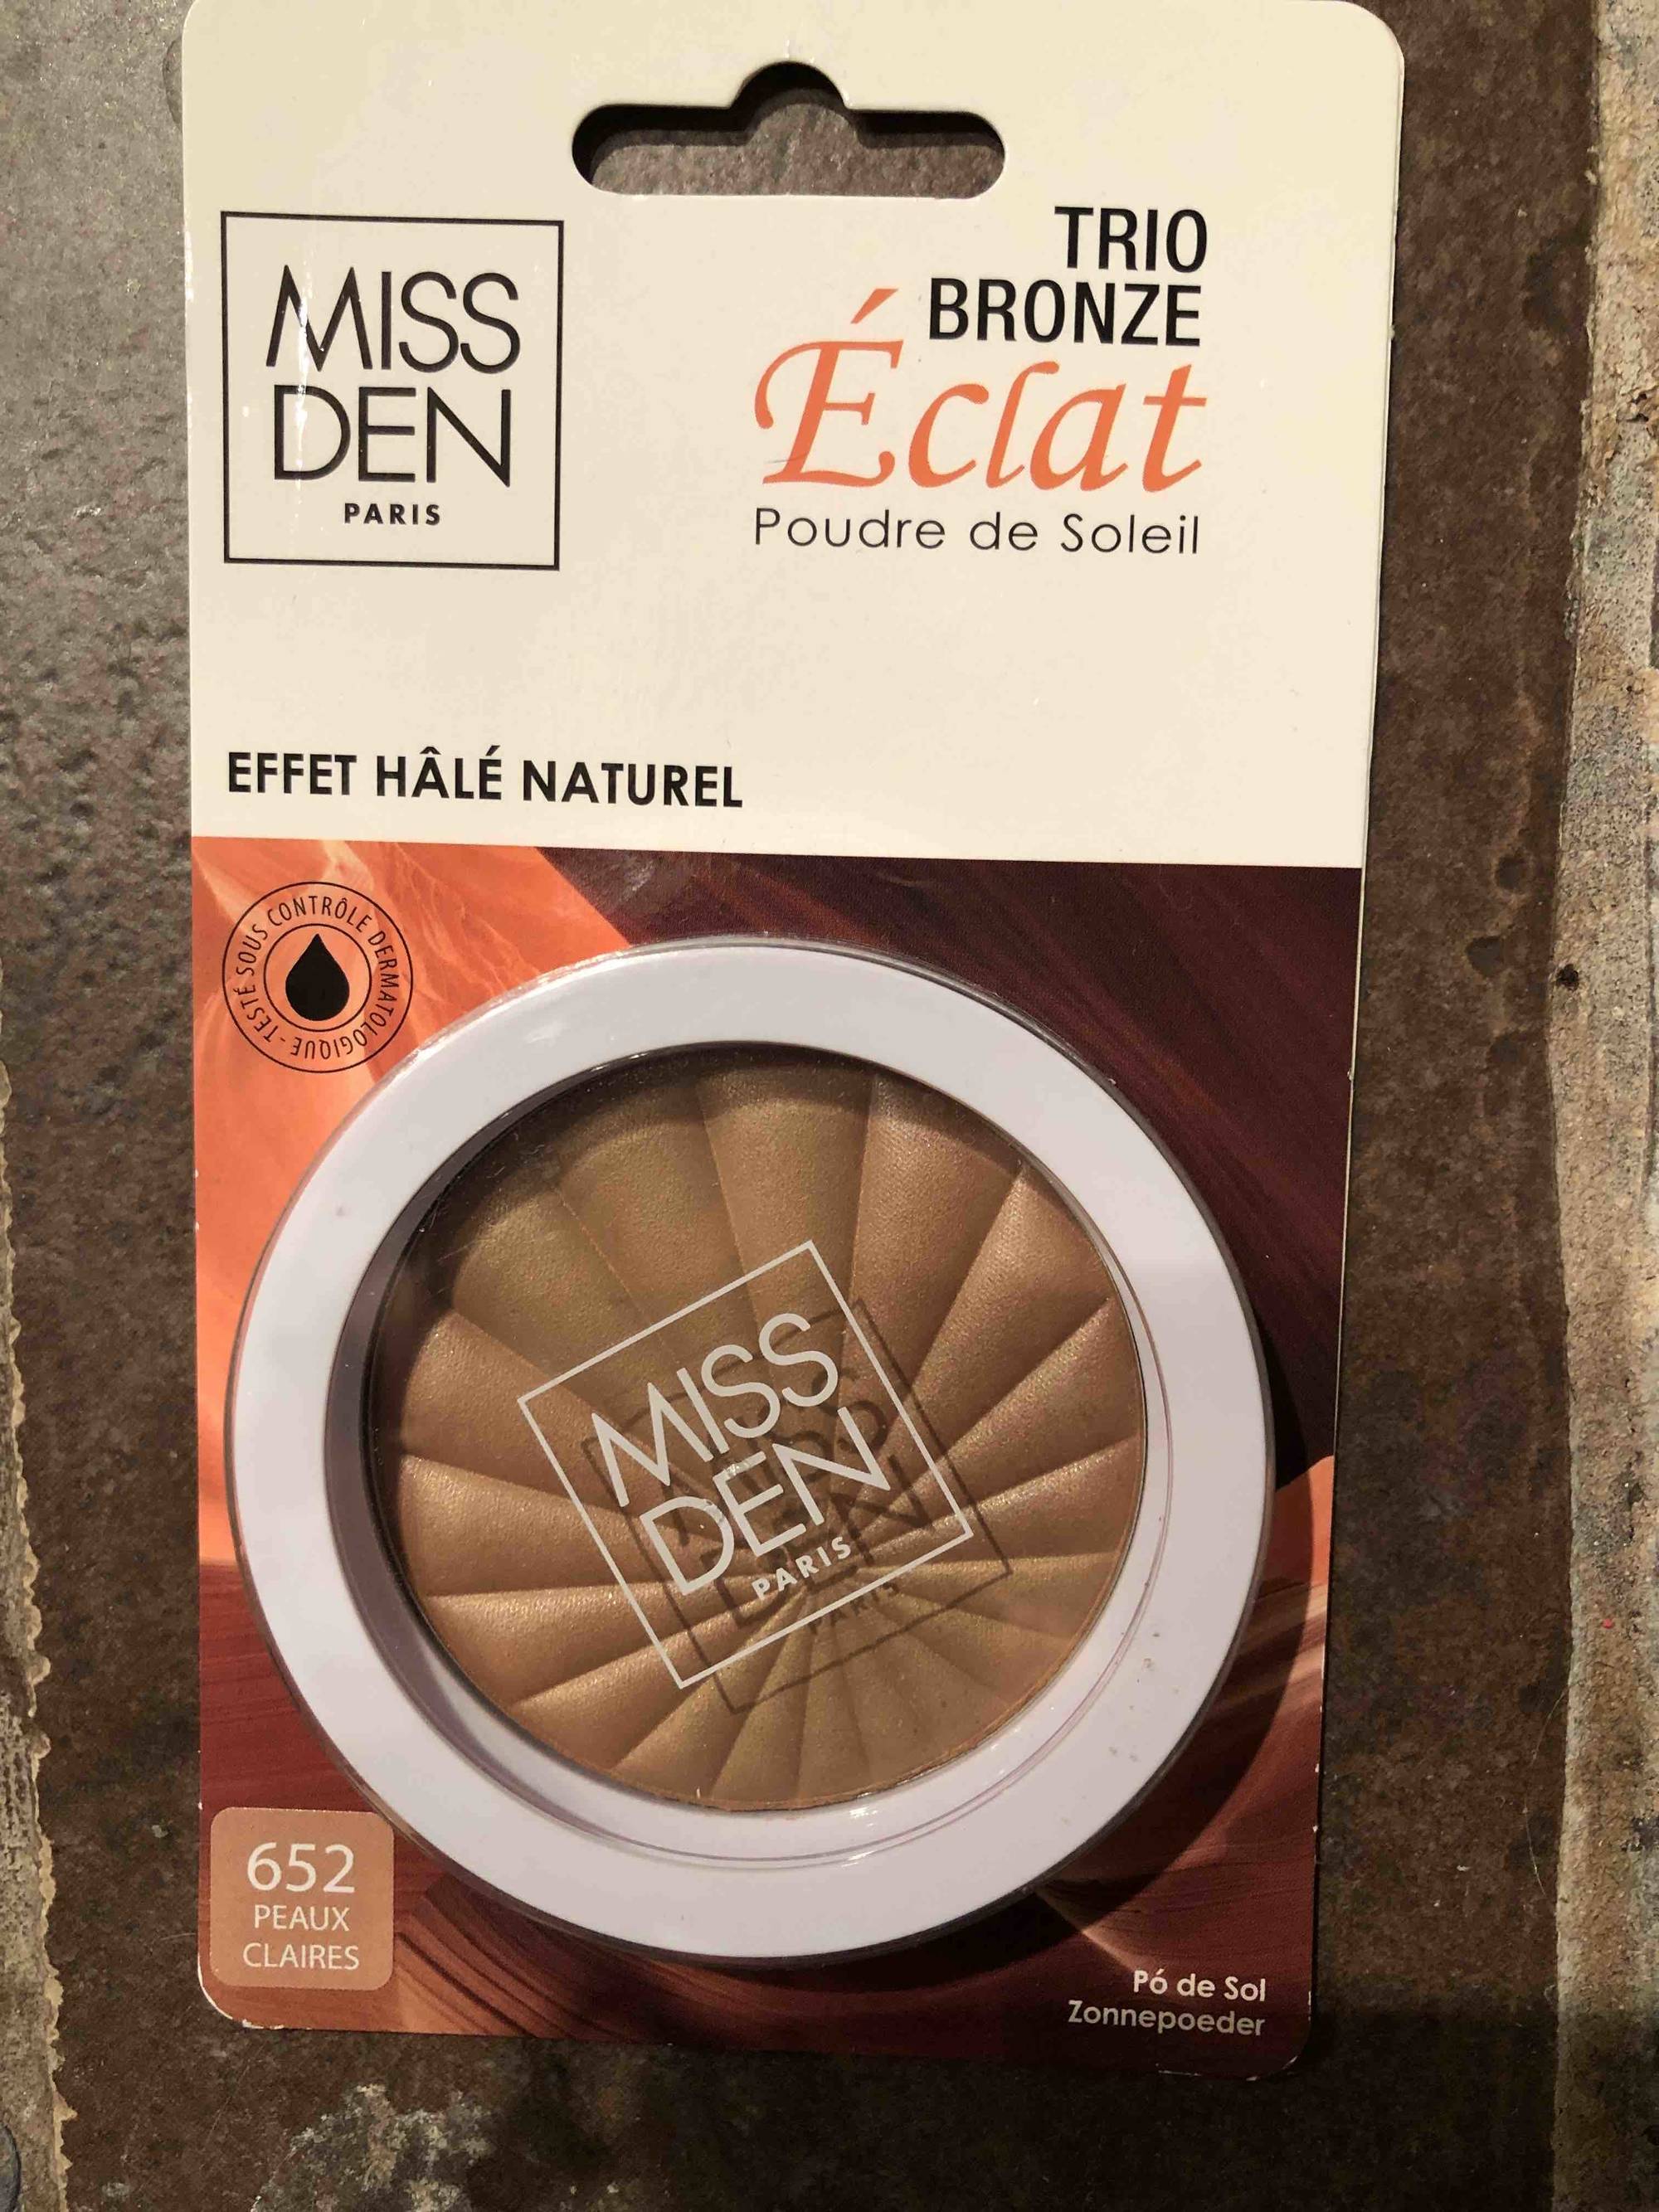 MISS DEN PARIS - Trio bronze éclat - Effet hâle naturel 652 peaux claires